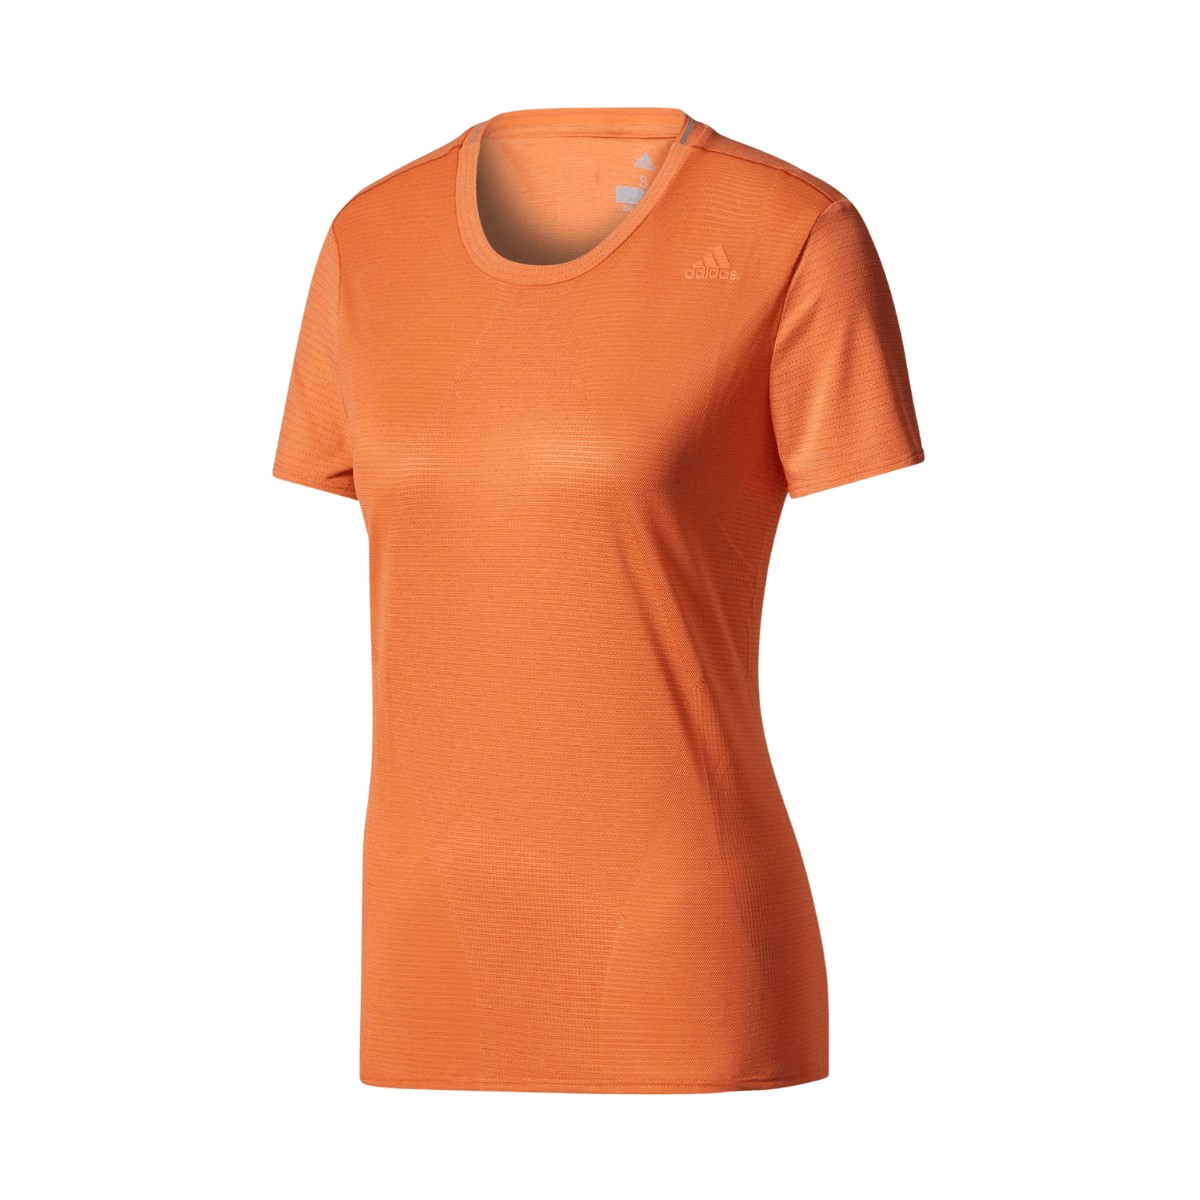 Camiseta feminina Adidas Supernova na cor coral, Tamanho XS.